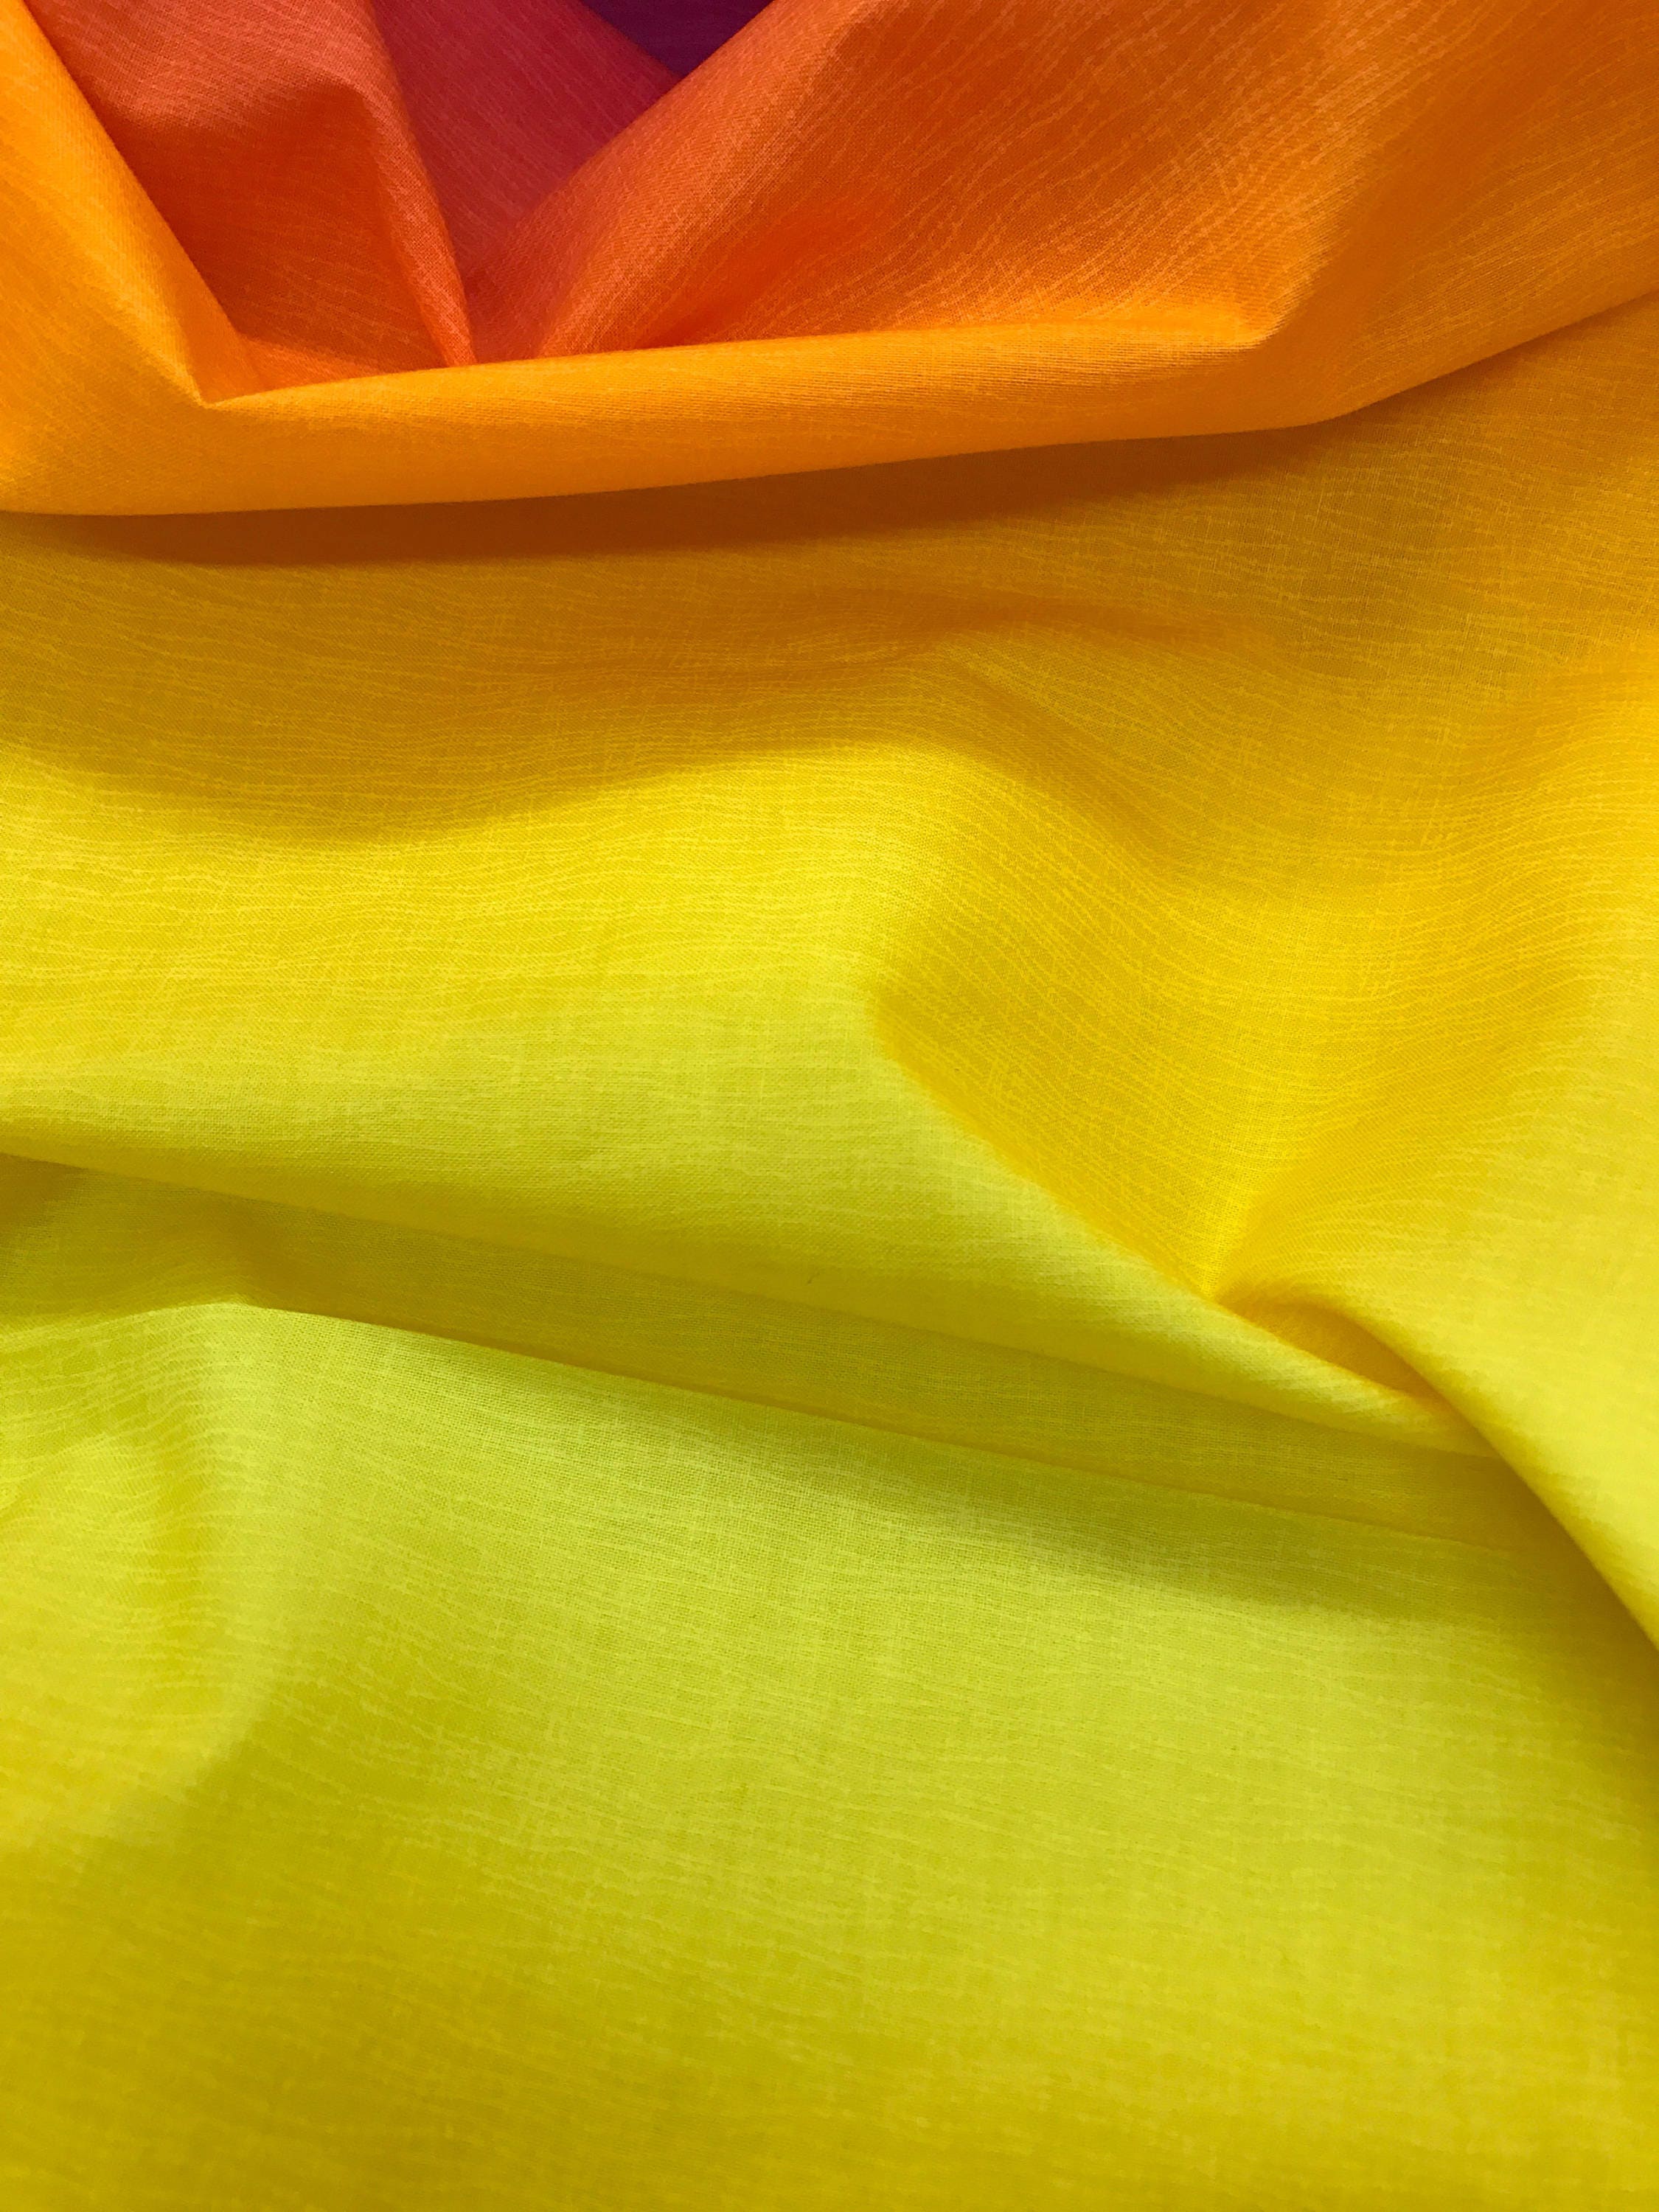 Sunrise Ombre Gelato Fabric From Elite Fabric by Maywood - Etsy UK